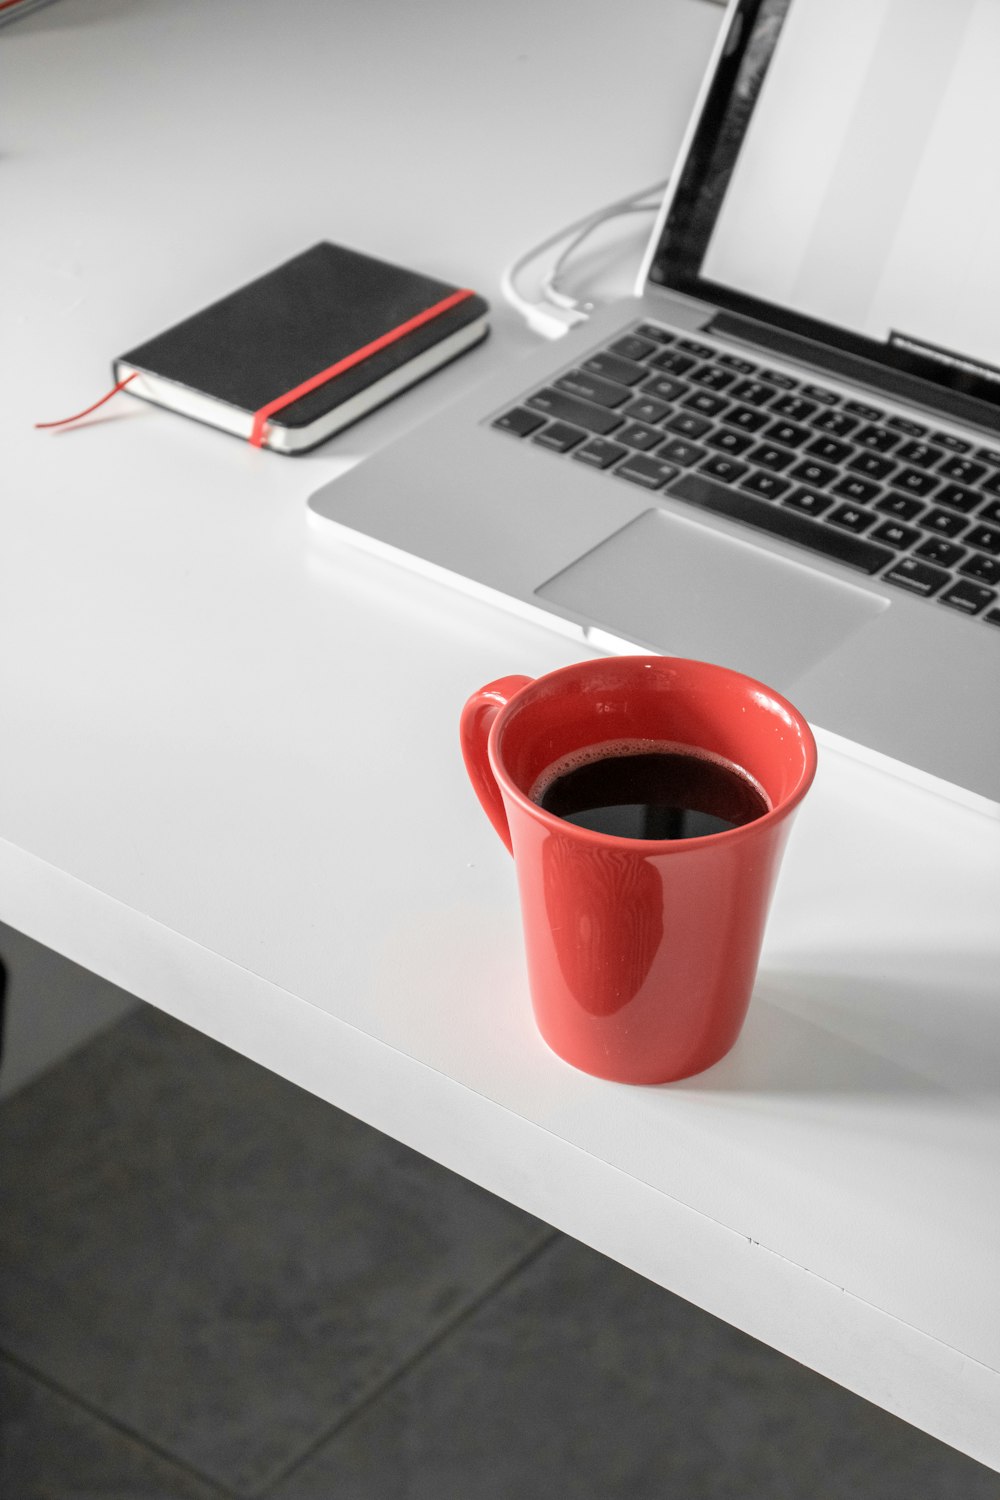 흰색 나무 책상 위에 맥북 프로 옆에 커피가 담긴 빨간 세라믹 머그잔